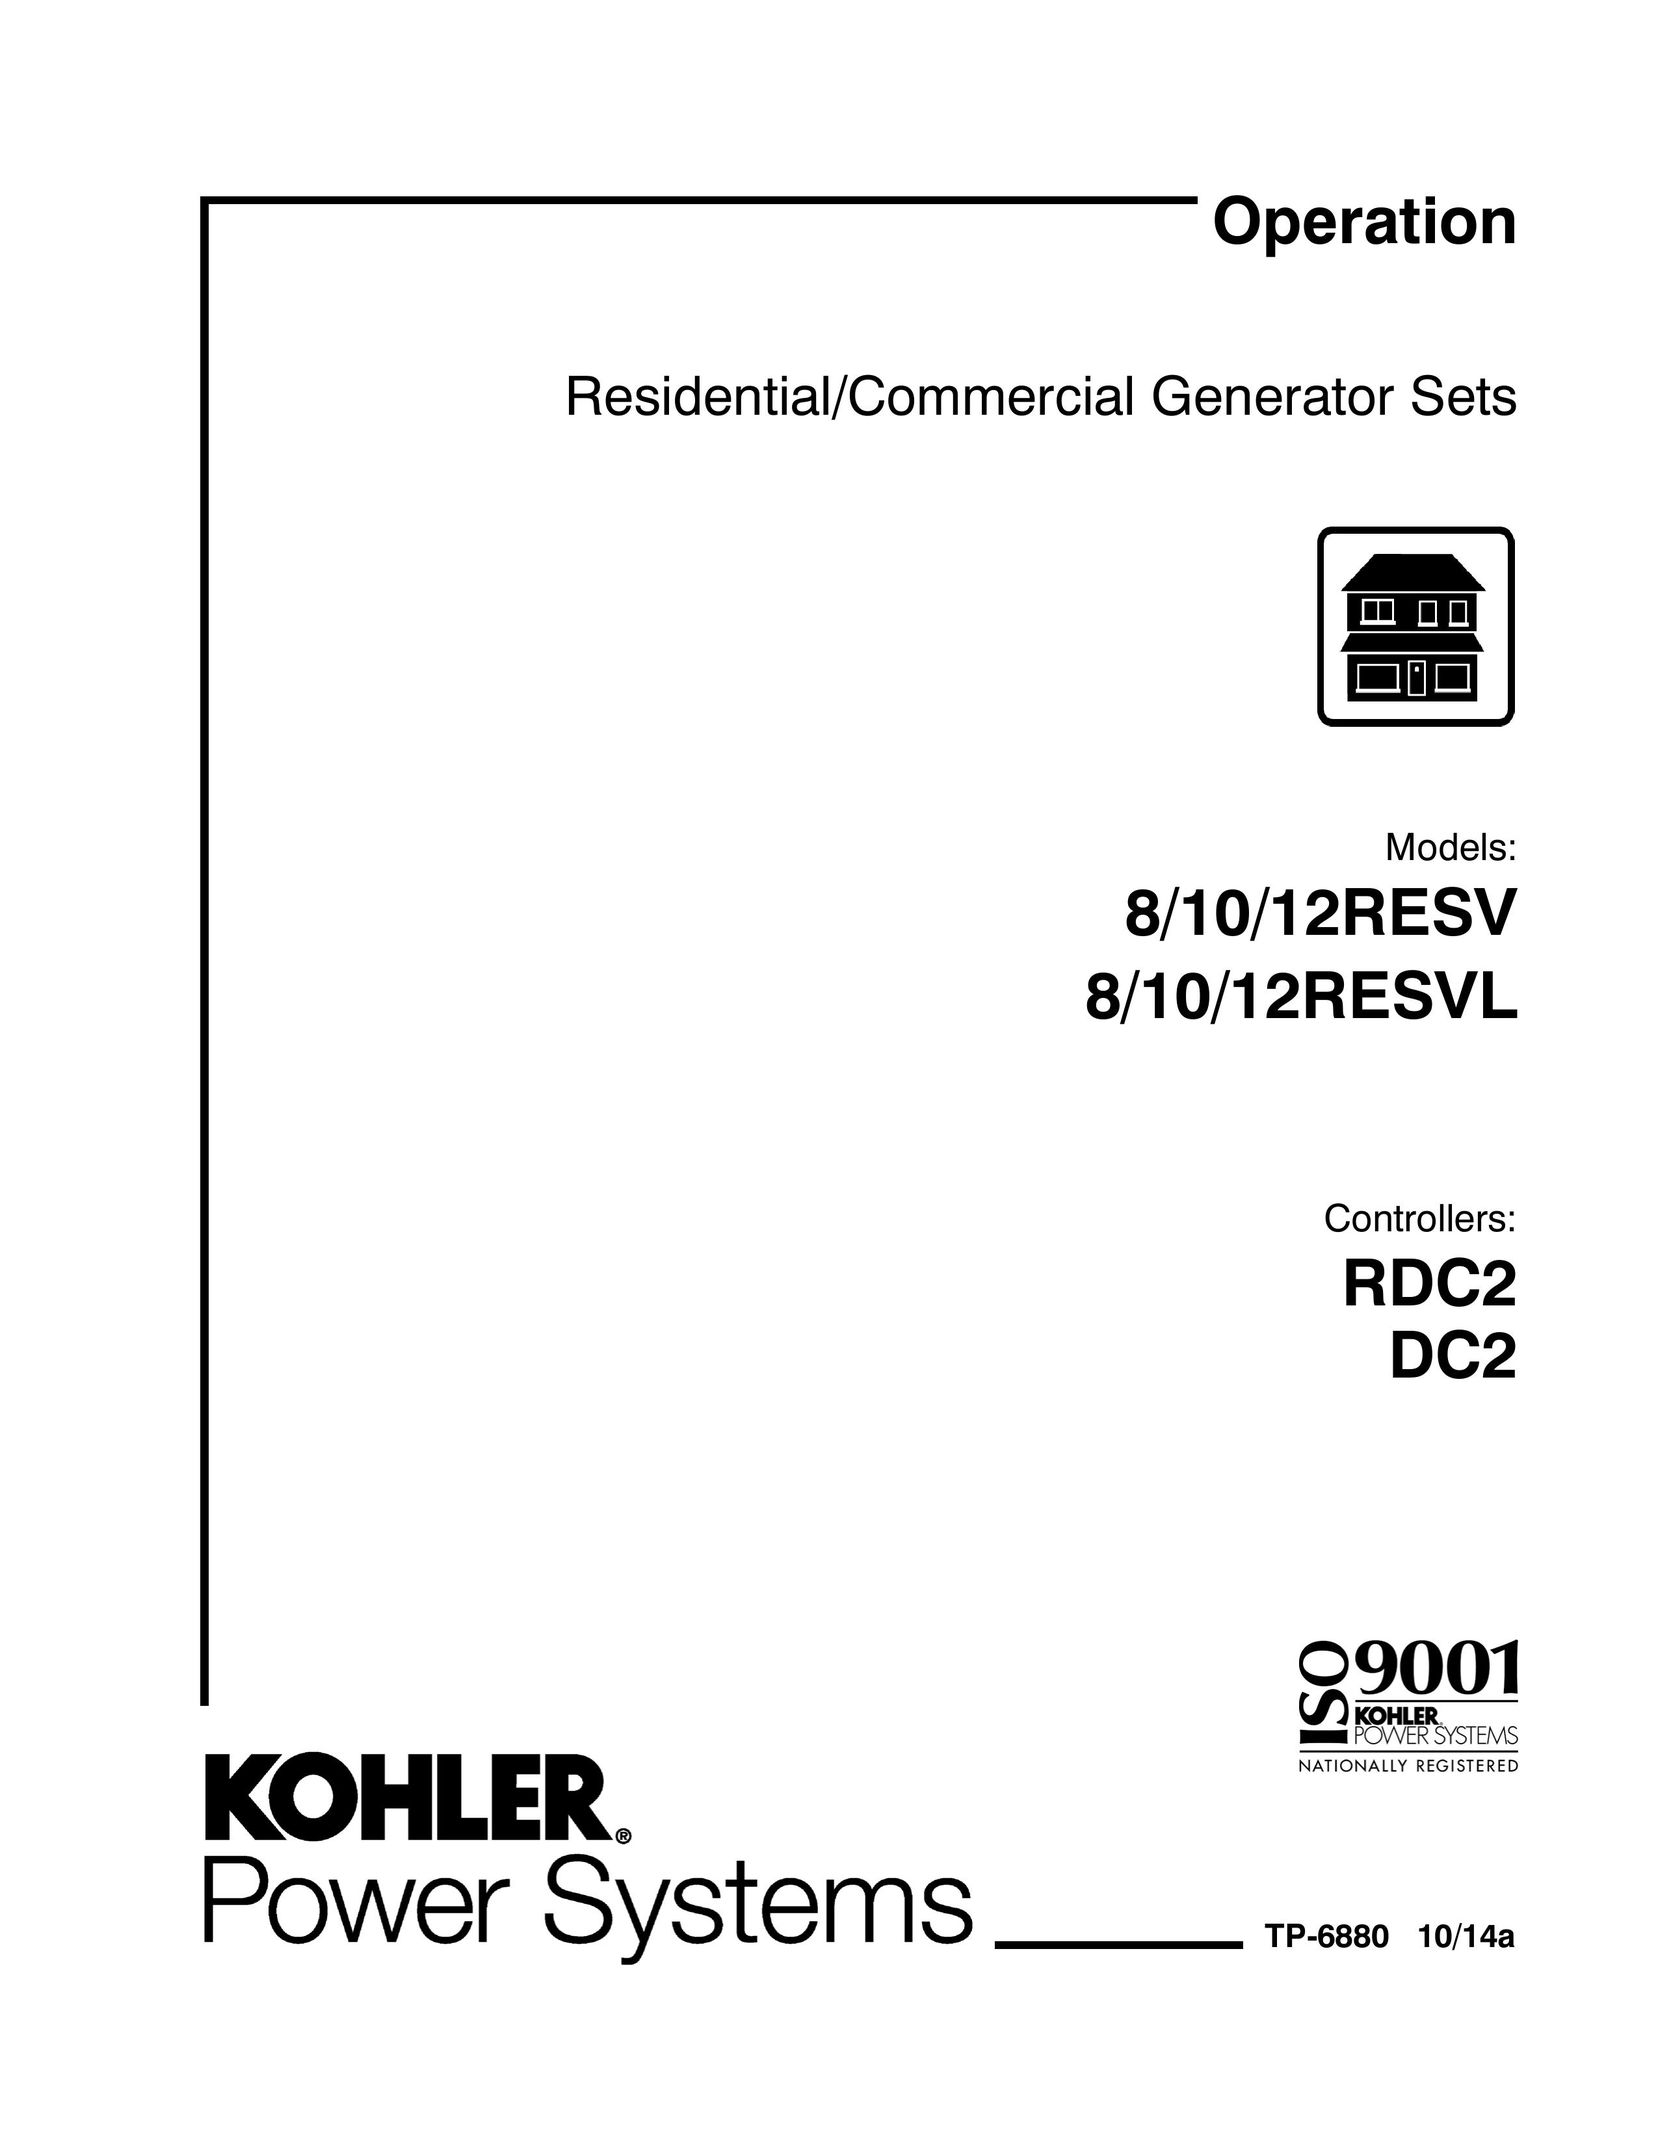 Kohler 8/10/12RESV Welding System User Manual